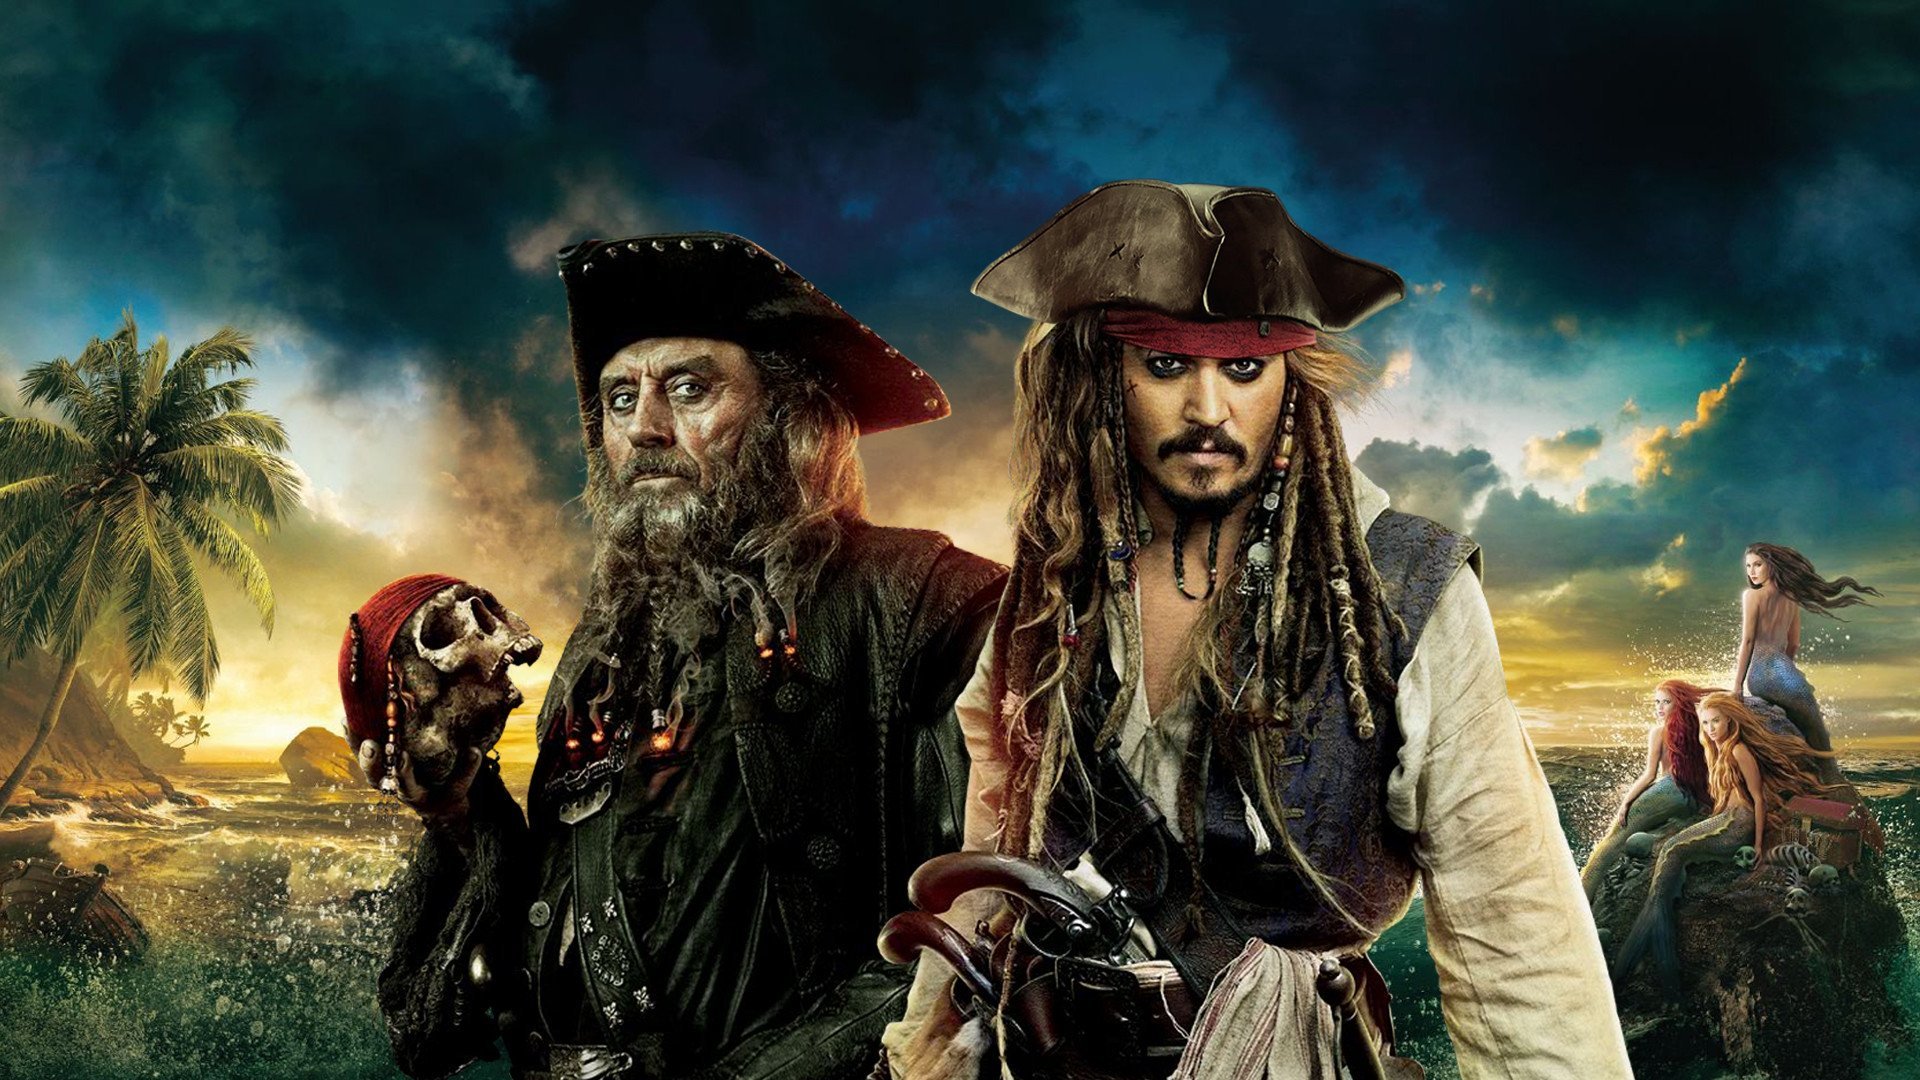 пираты карибского моря картинки на рабочий